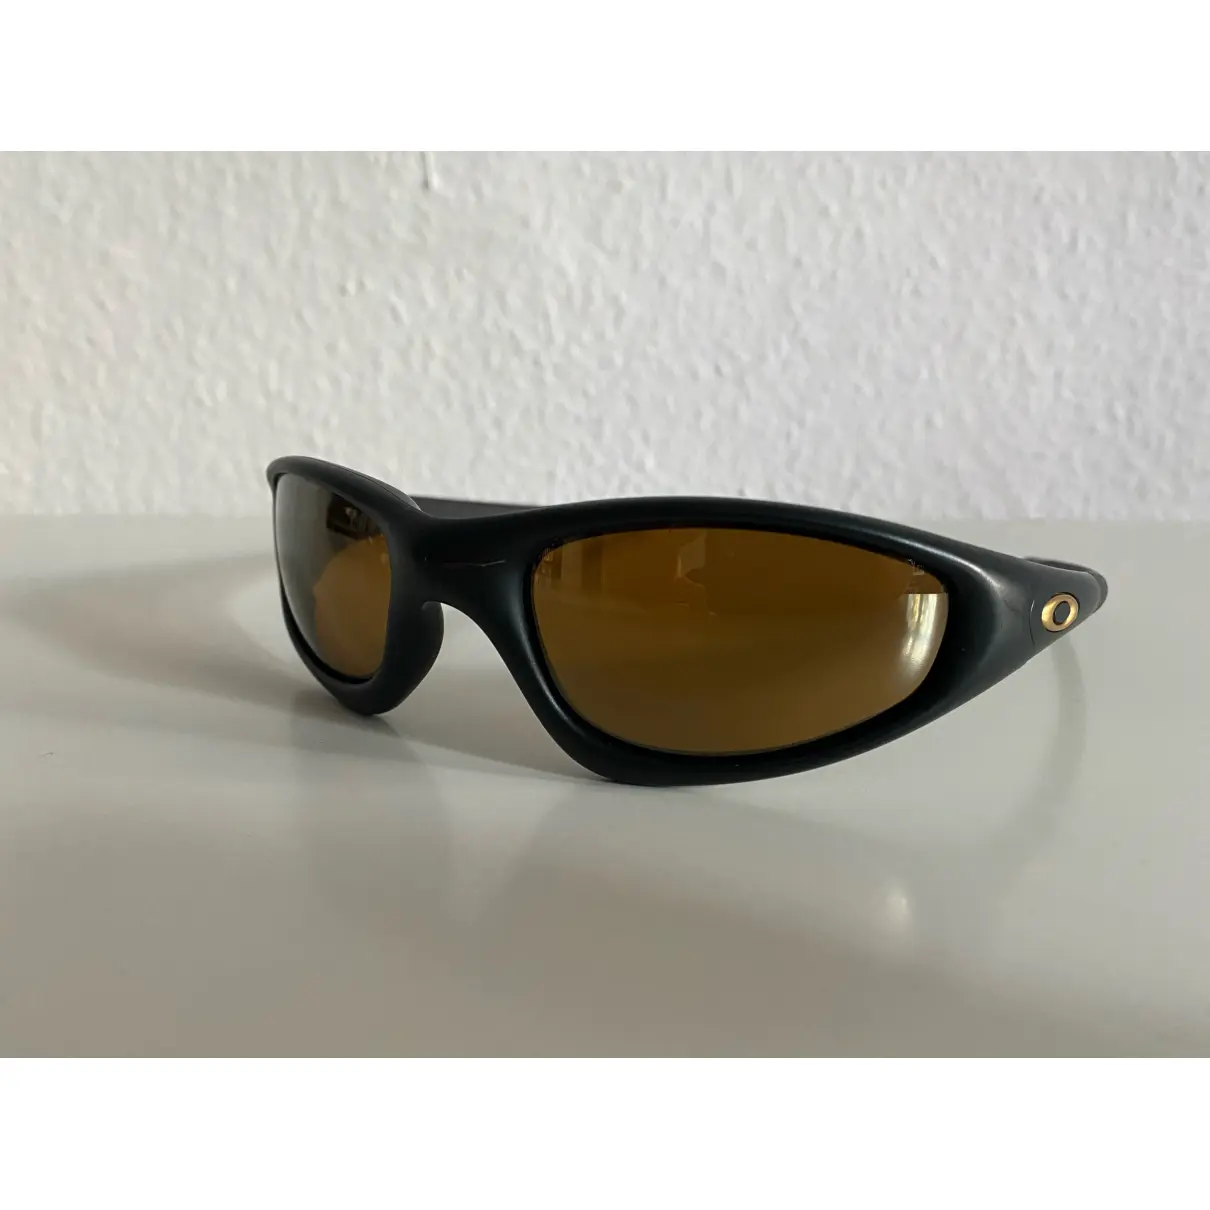 Buy OAKLEY Sunglasses online